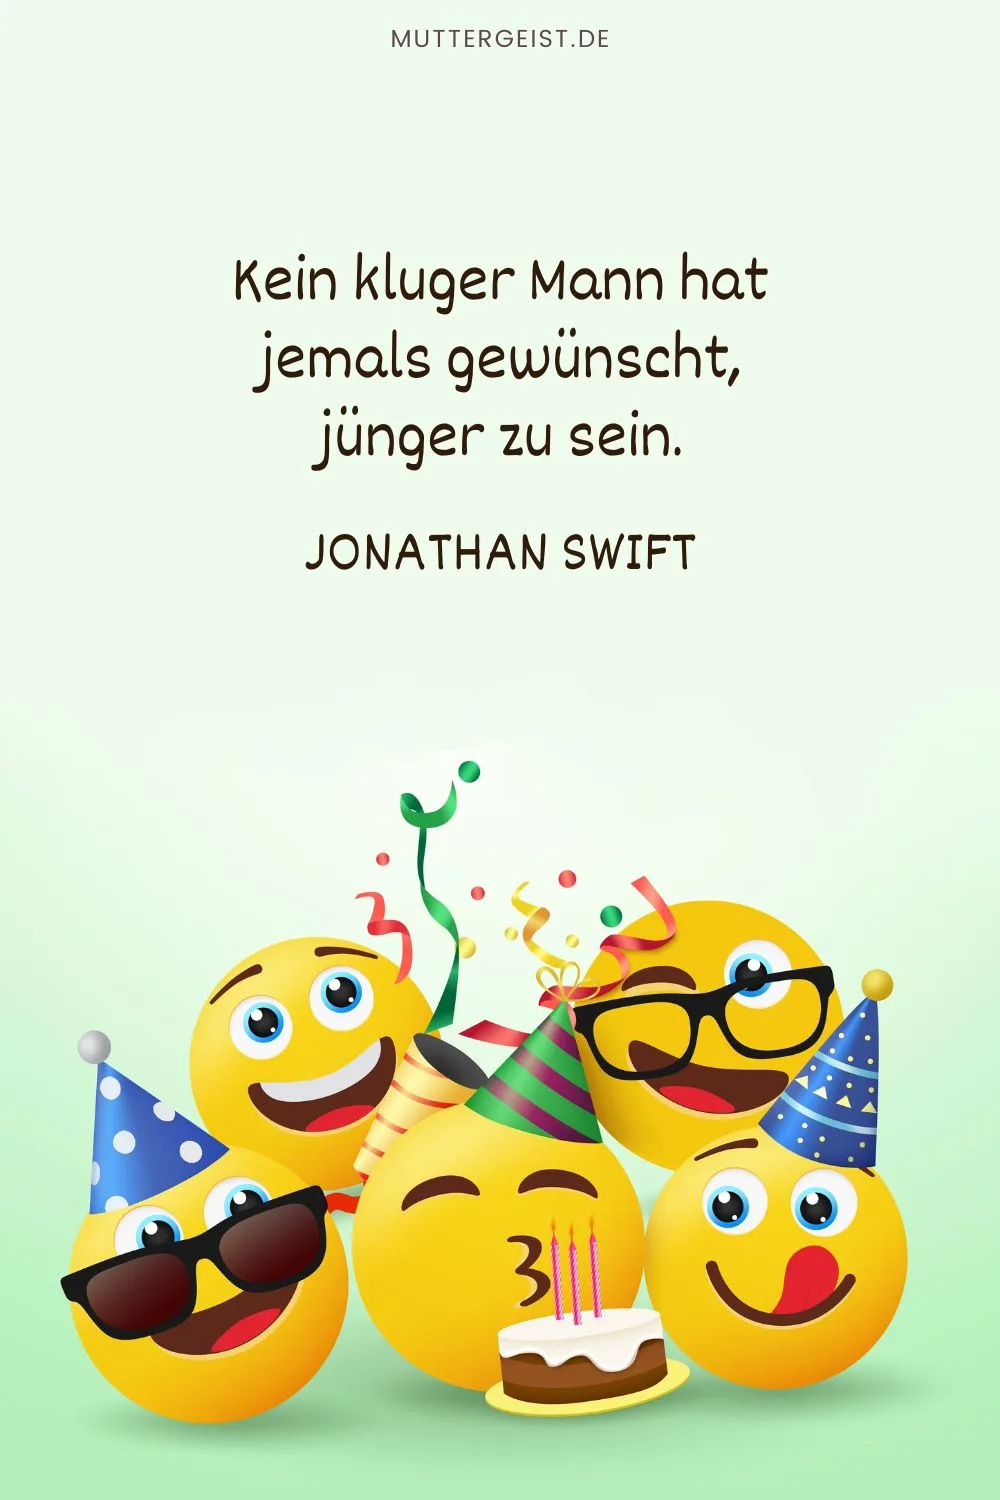 weiser und lustiger Geburtstagsspruch von Jonathan Swift: „Kein kluger Mann hat jemals gewünscht, jünger zu sein.“